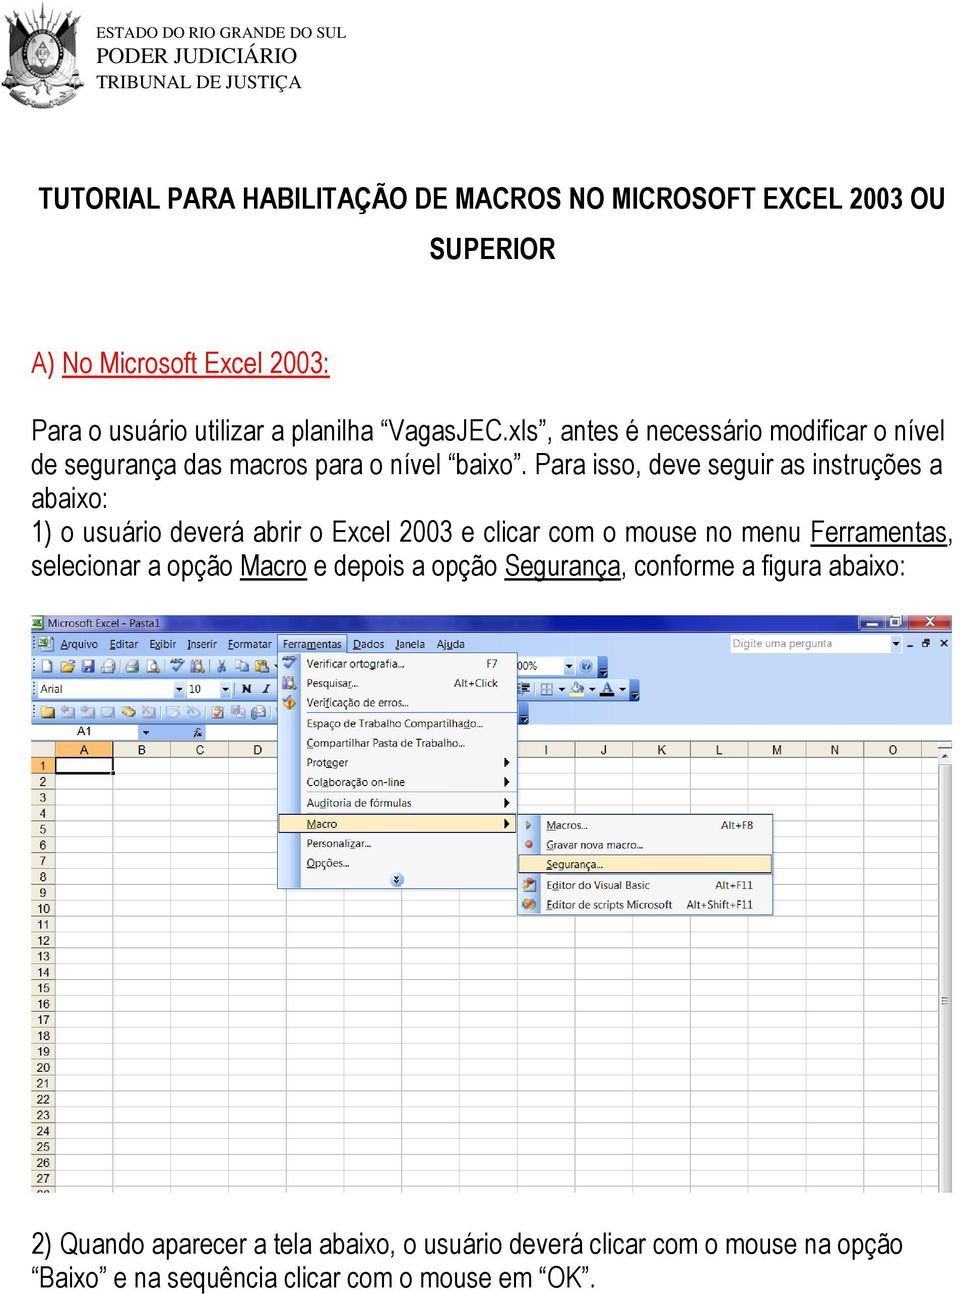 Para isso, deve seguir as instruções a abaixo: 1) o usuário deverá abrir o Excel 2003 e clicar com o mouse no menu Ferramentas, selecionar a